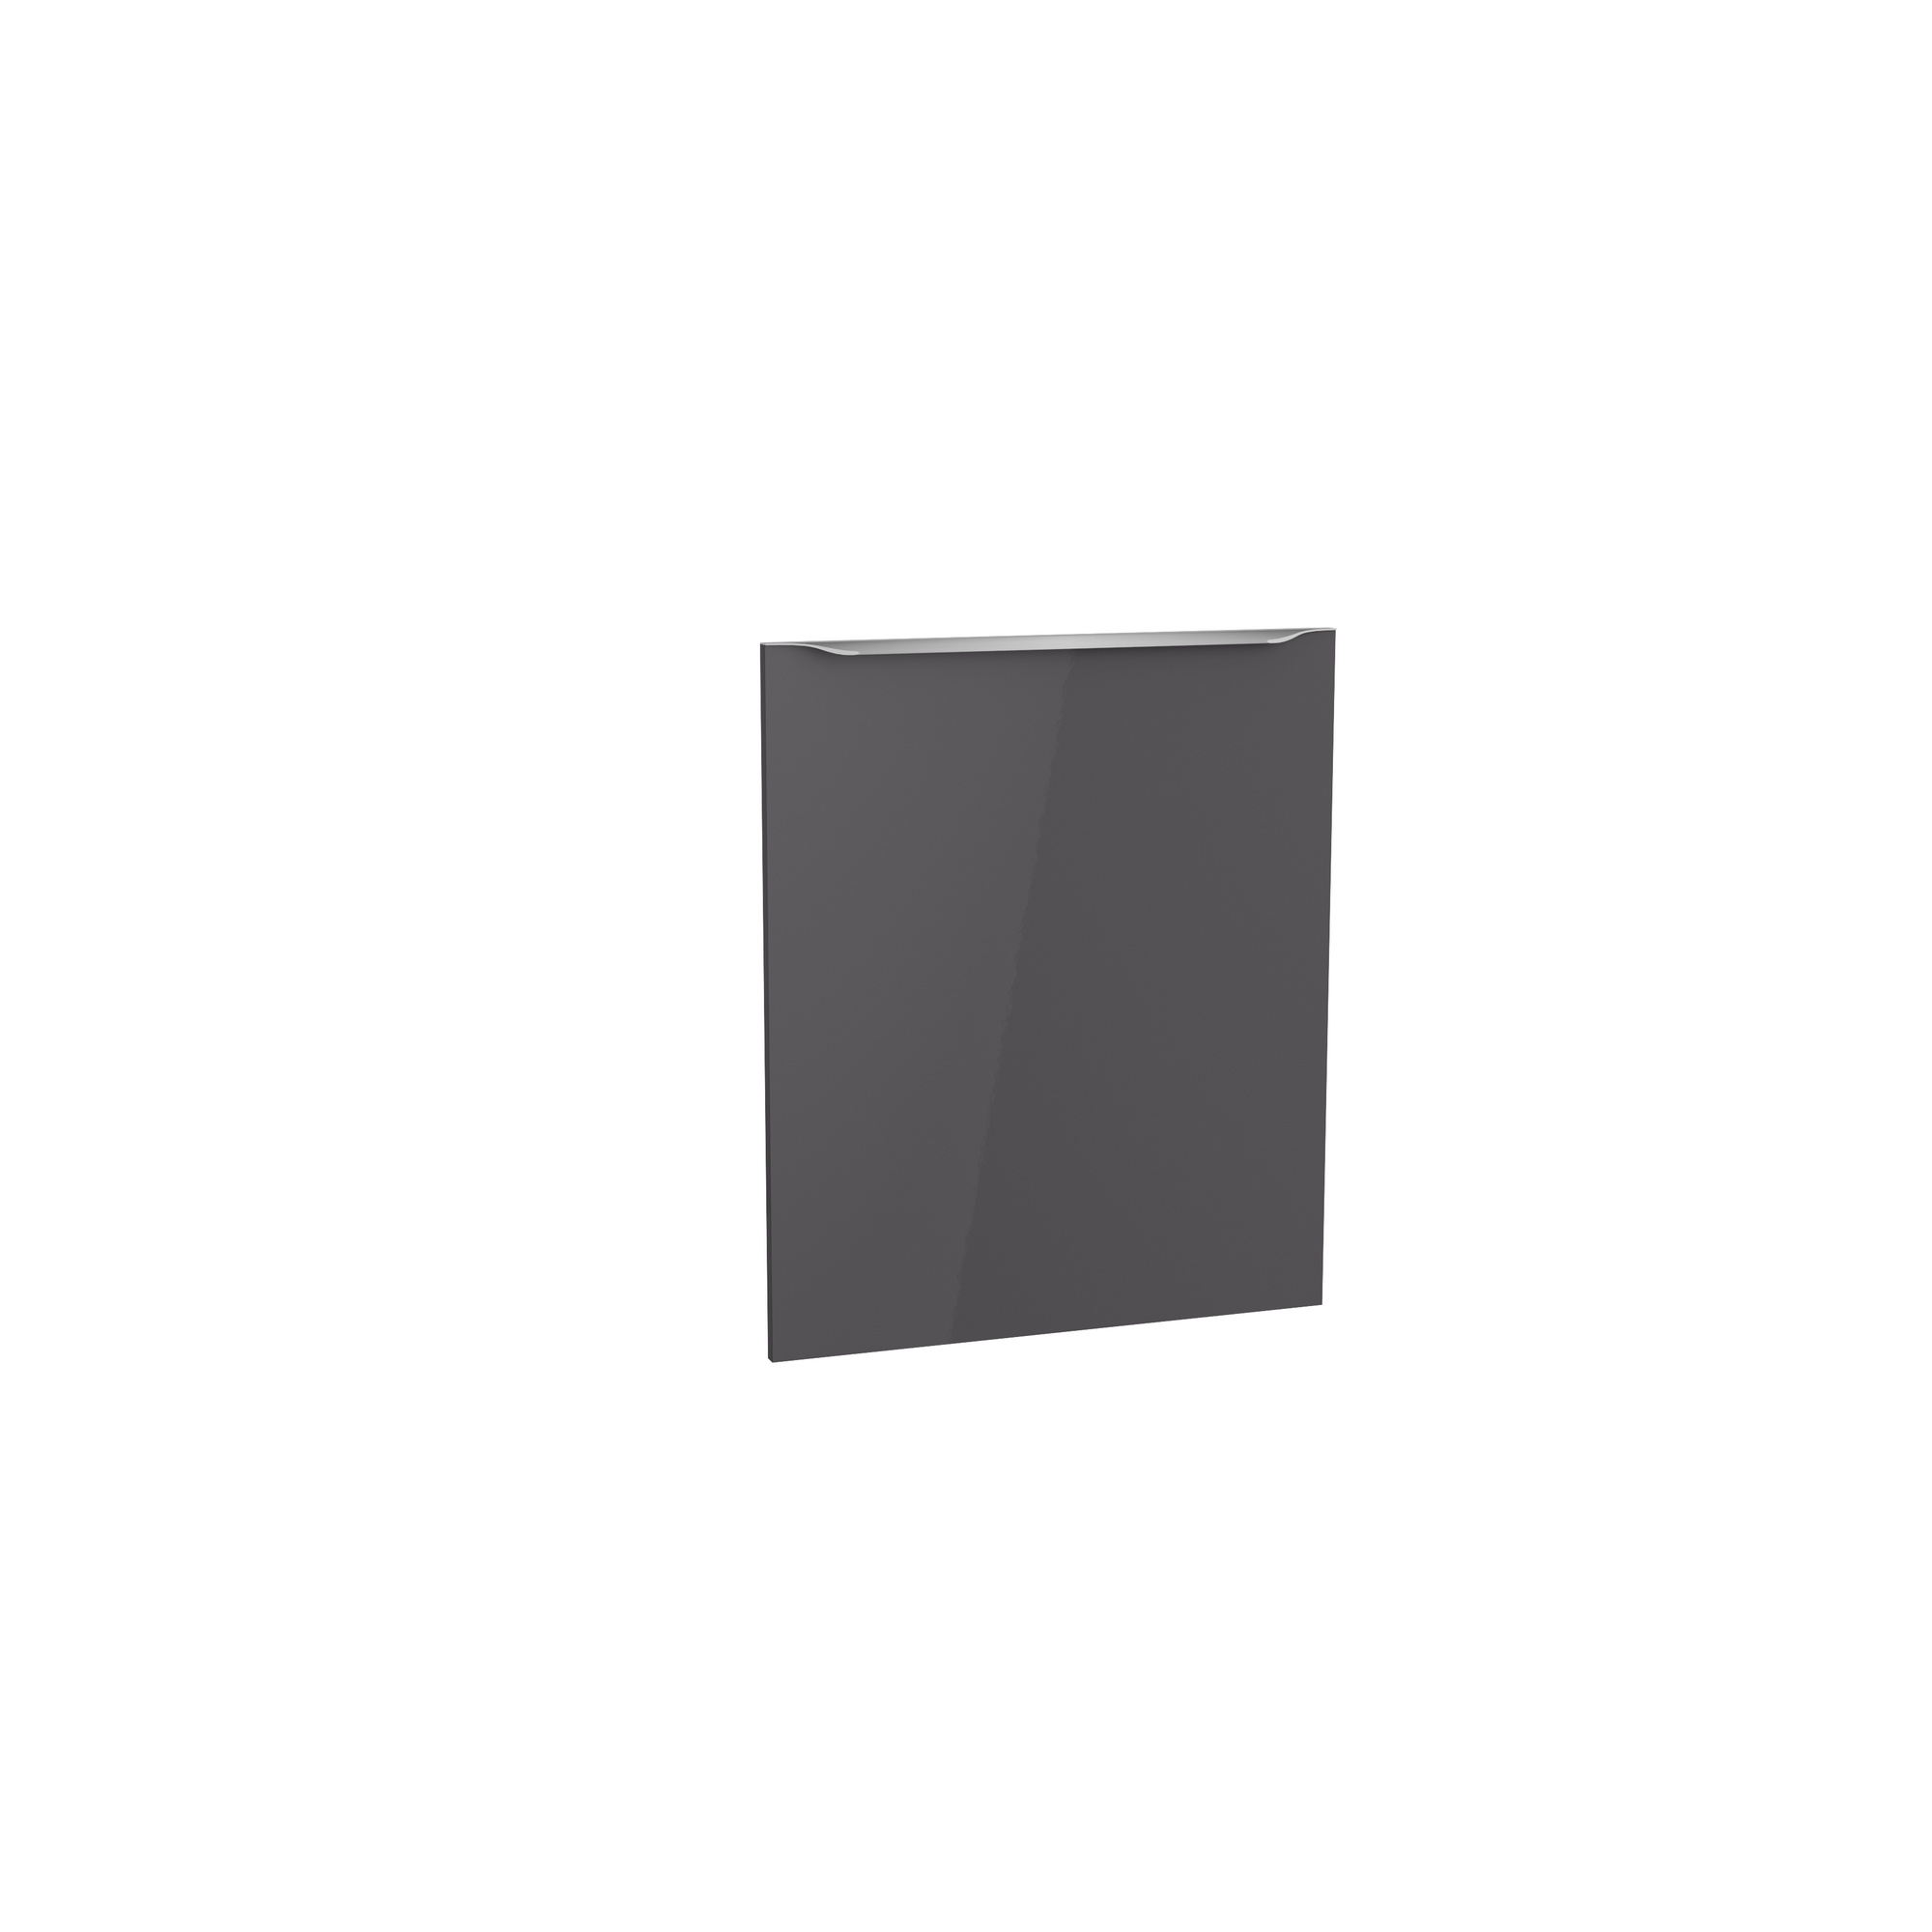 Tür für vollintegrierten Geschirrspüler 'Optikomfort Linus984' anthrazit 59,6 x 70 x 1,6 cm + product picture